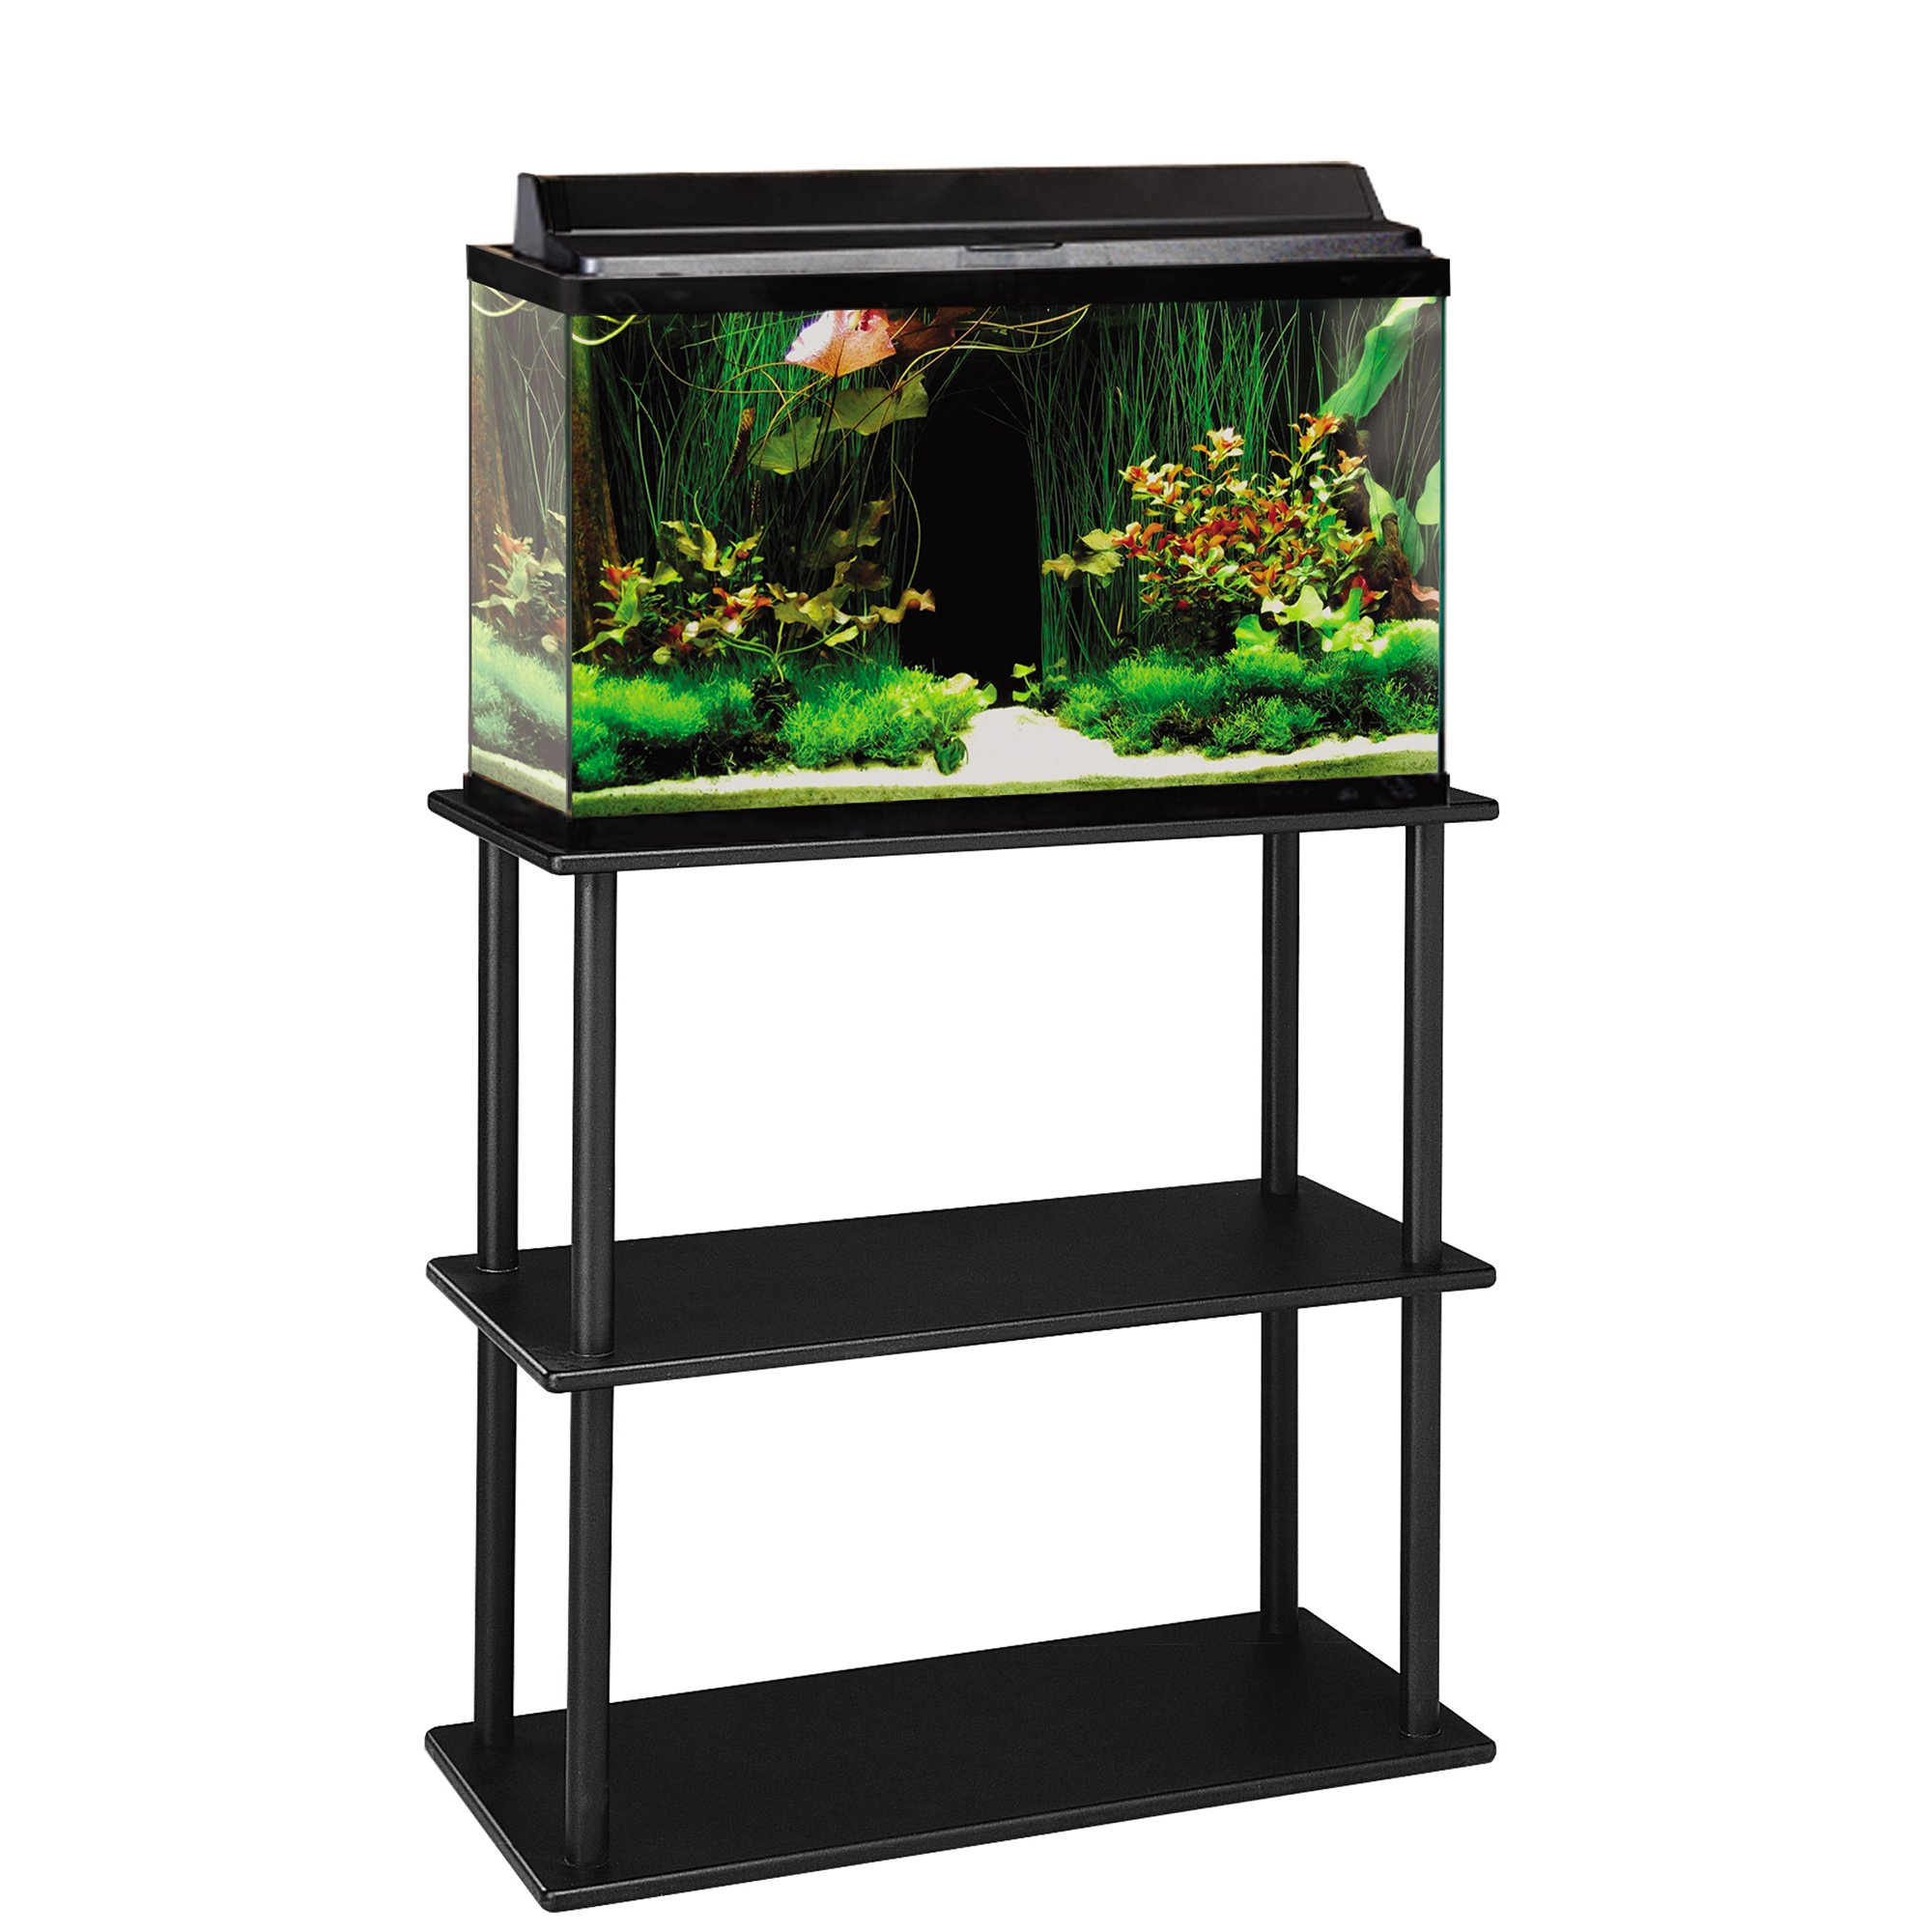 20 29 37 gallon aquarium stand with shelf aquatic fundamentals 20 